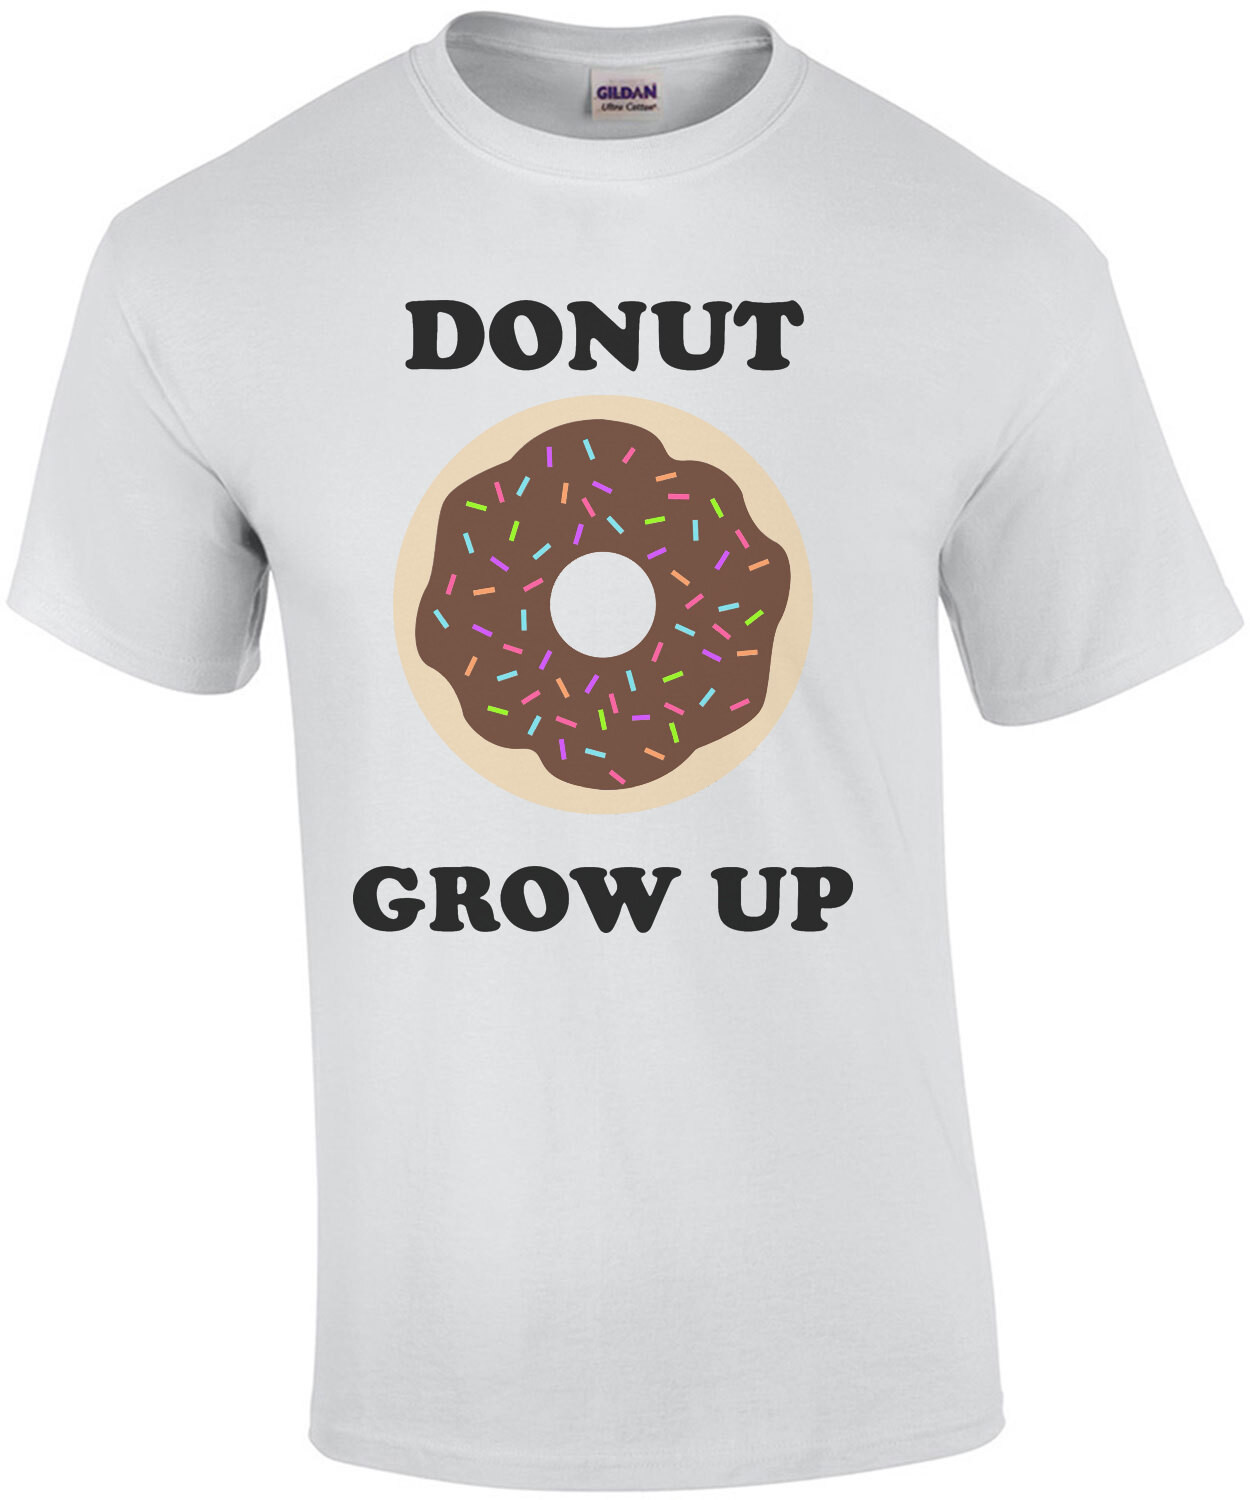 Donut Grow Up - Funny Donut Pun T-Shirt